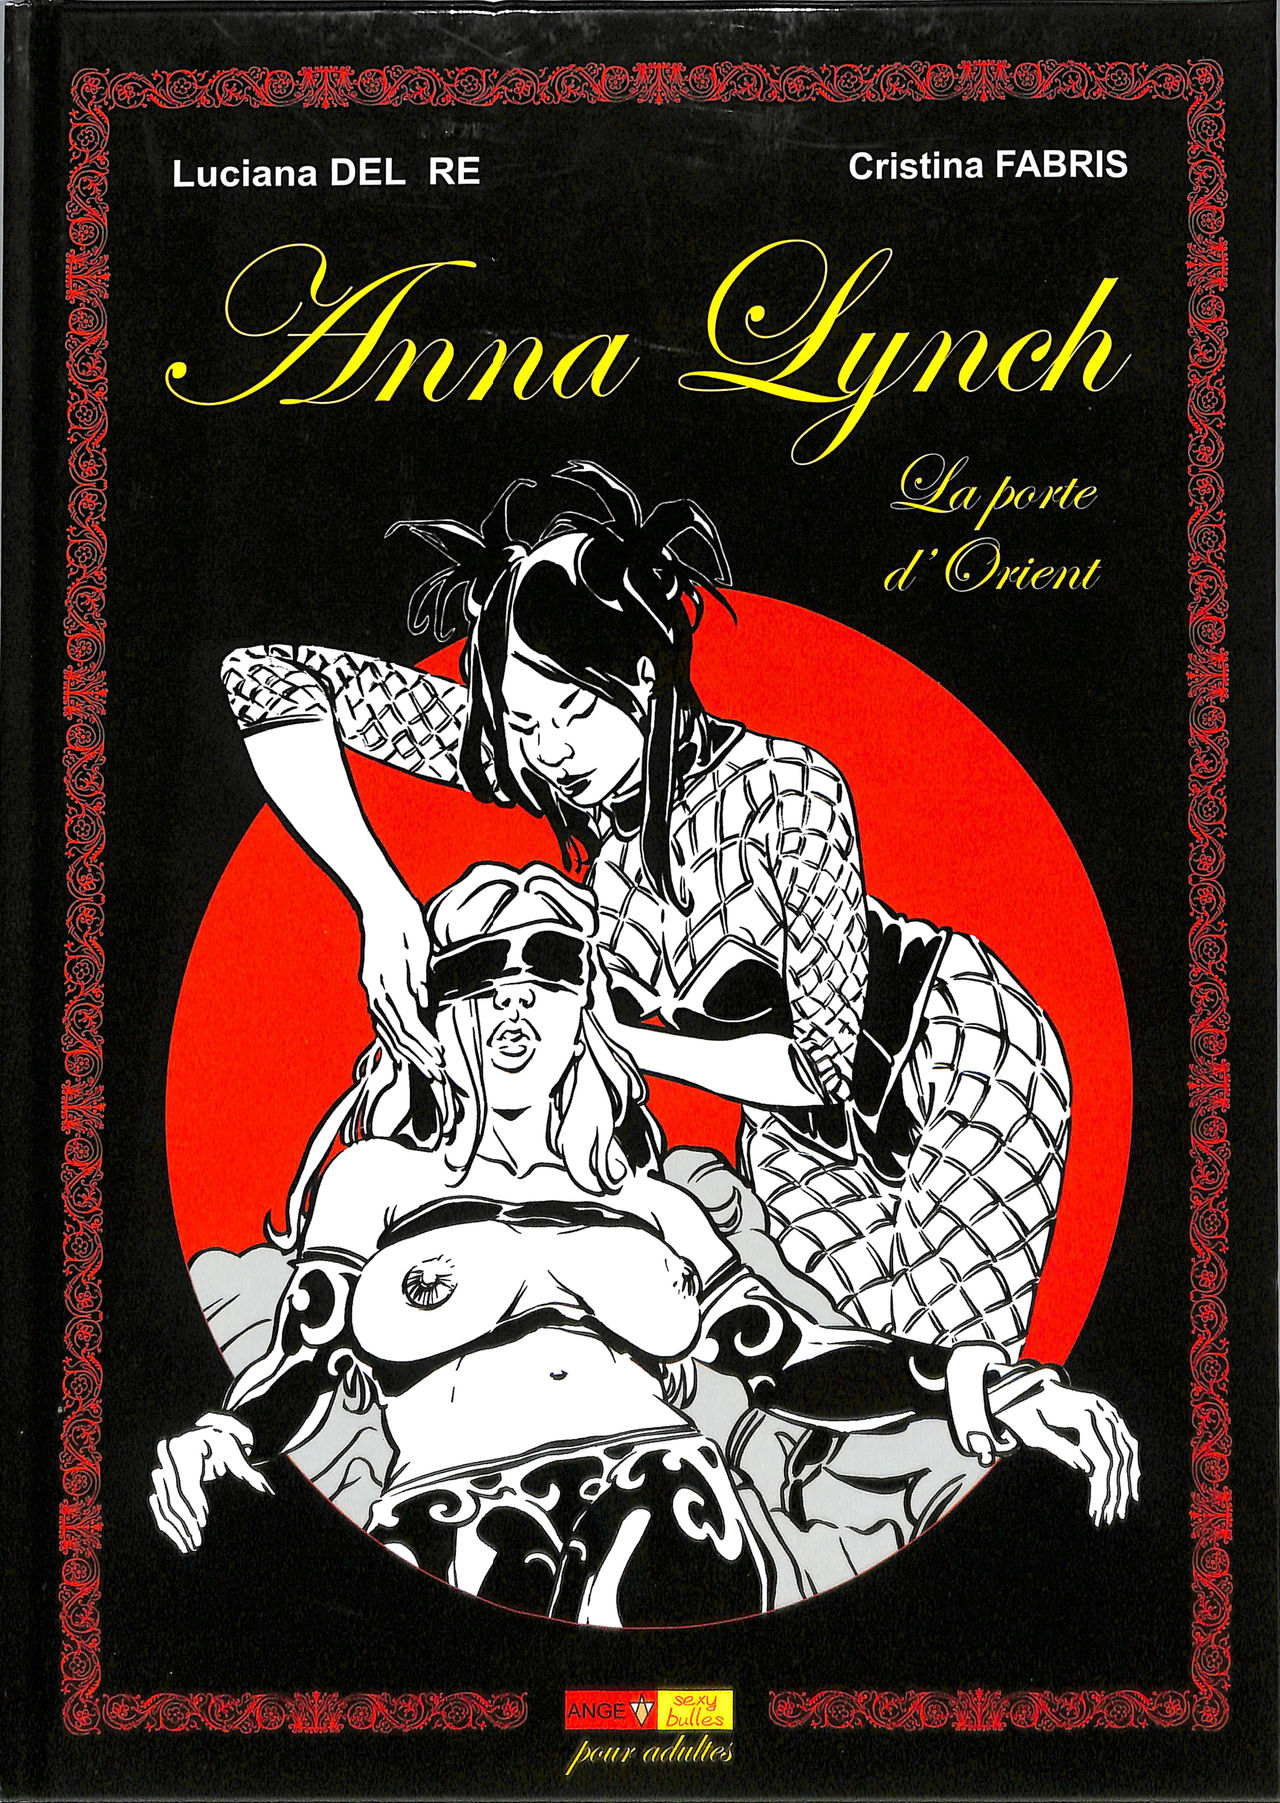 Anna Lynch : La porte dorient